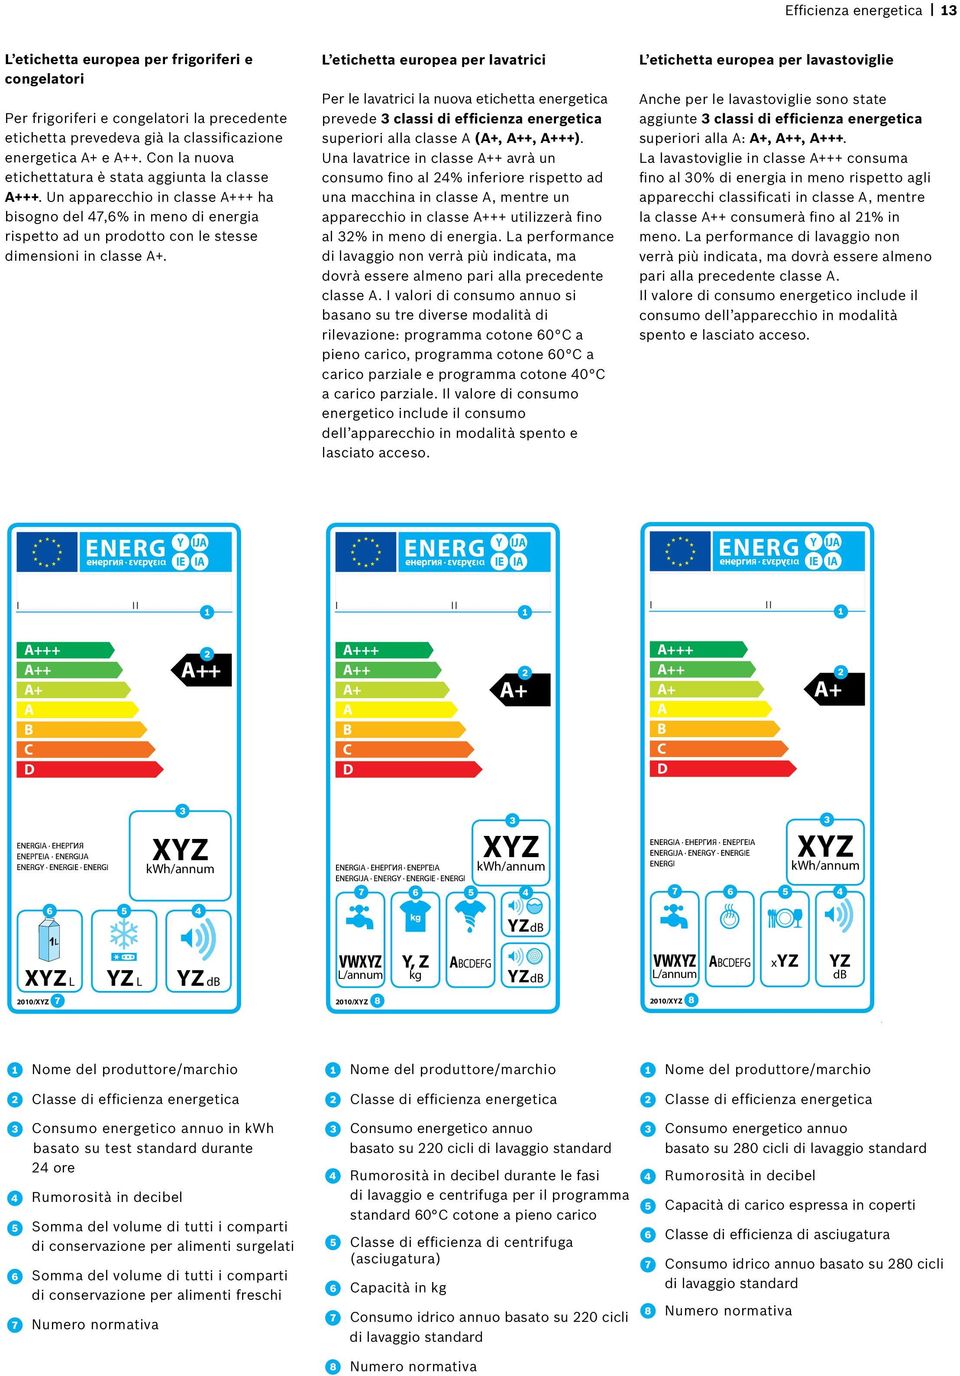 L etichetta europea per lavatrici Per le lavatrici la nuova etichetta energetica prevede 3 classi di efficienza energetica superiori alla classe A (A+, A++, A+++).